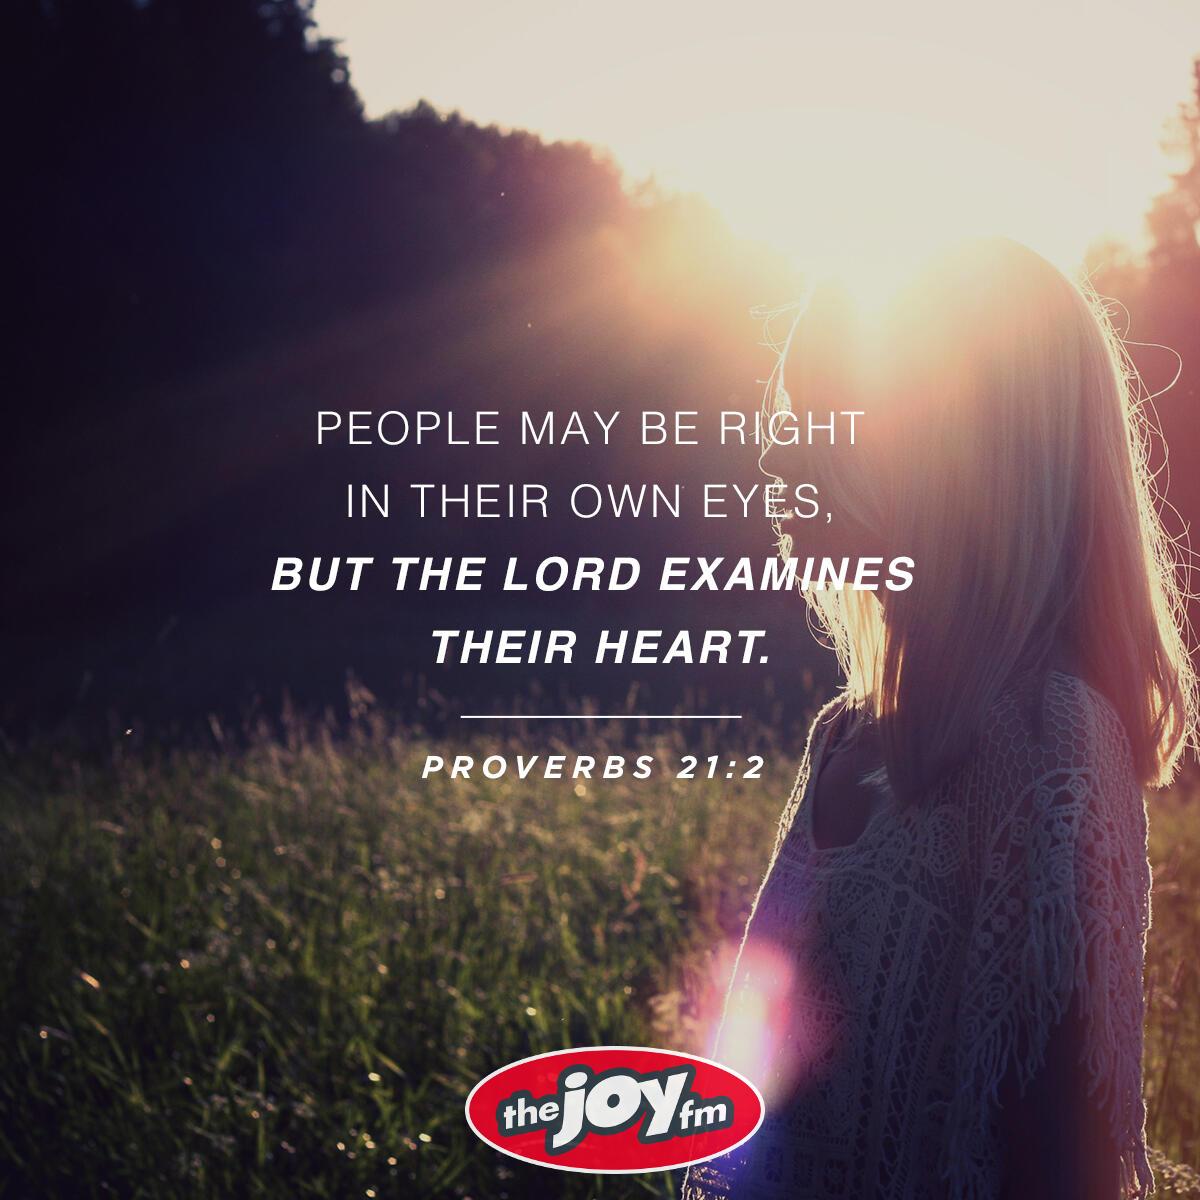 Proverbs 21:2